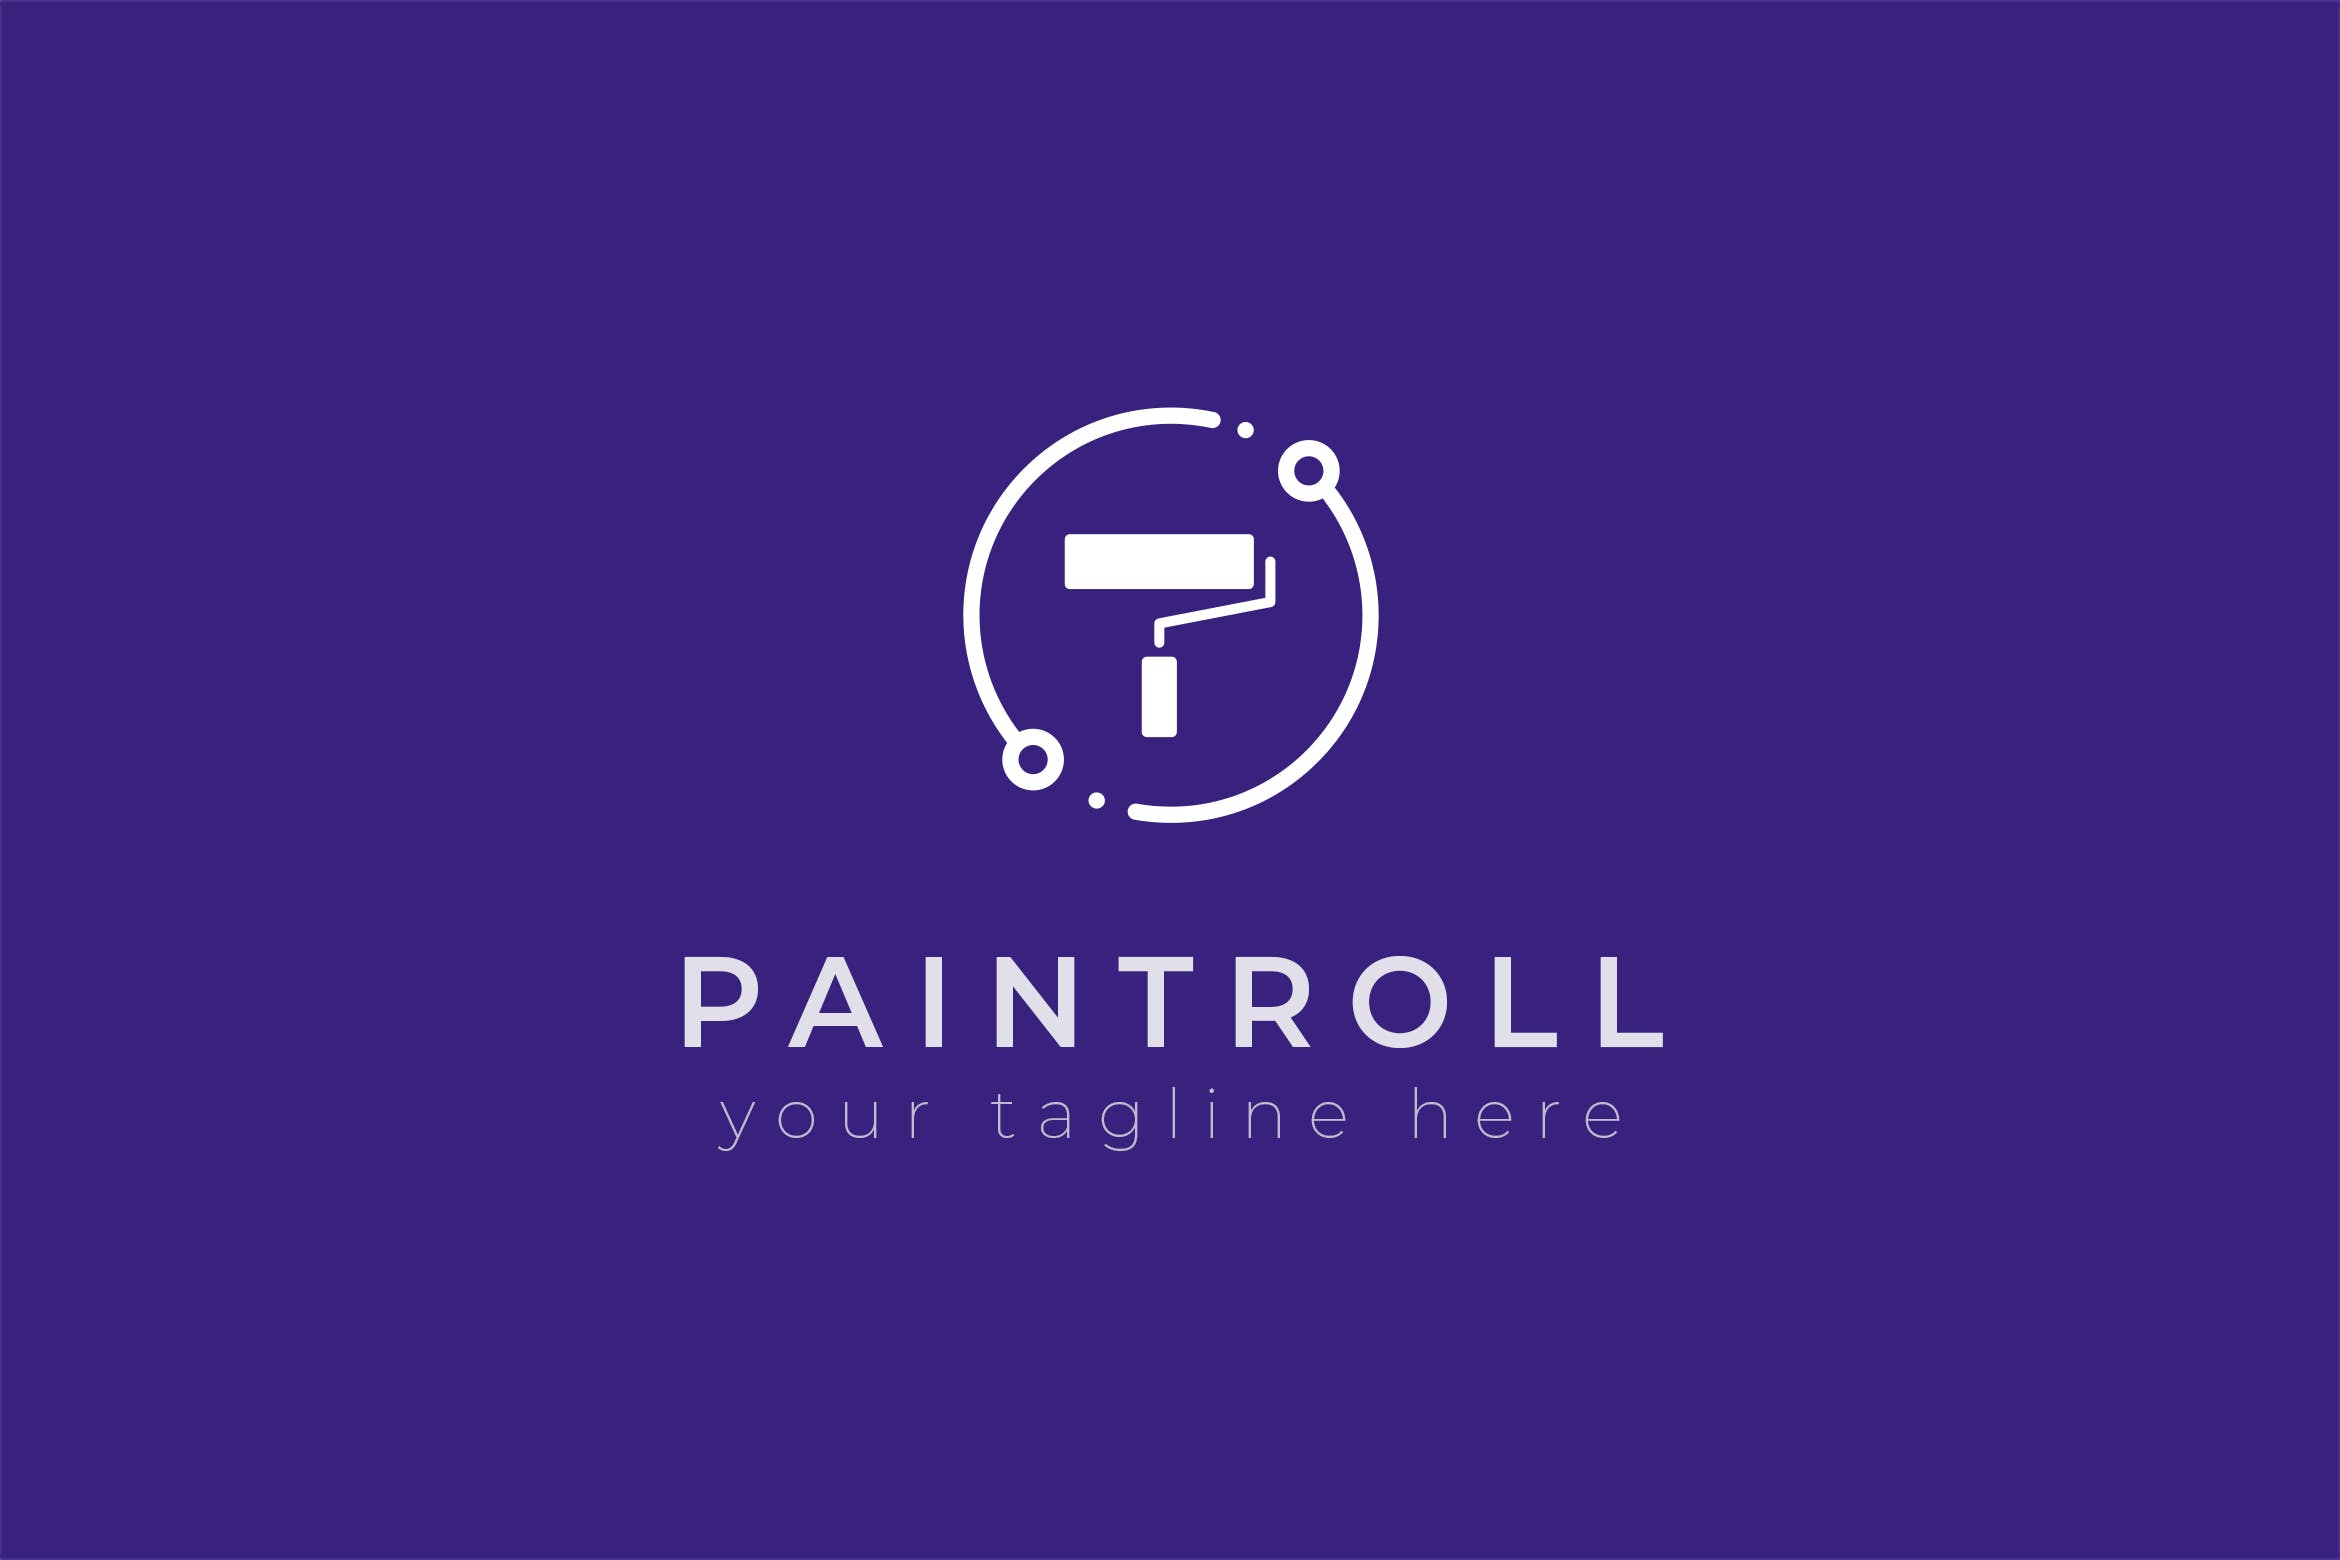 油漆品牌油漆滚刷图形Logo设计非凡图库精选模板 Paintroll – Premium Logo Template插图